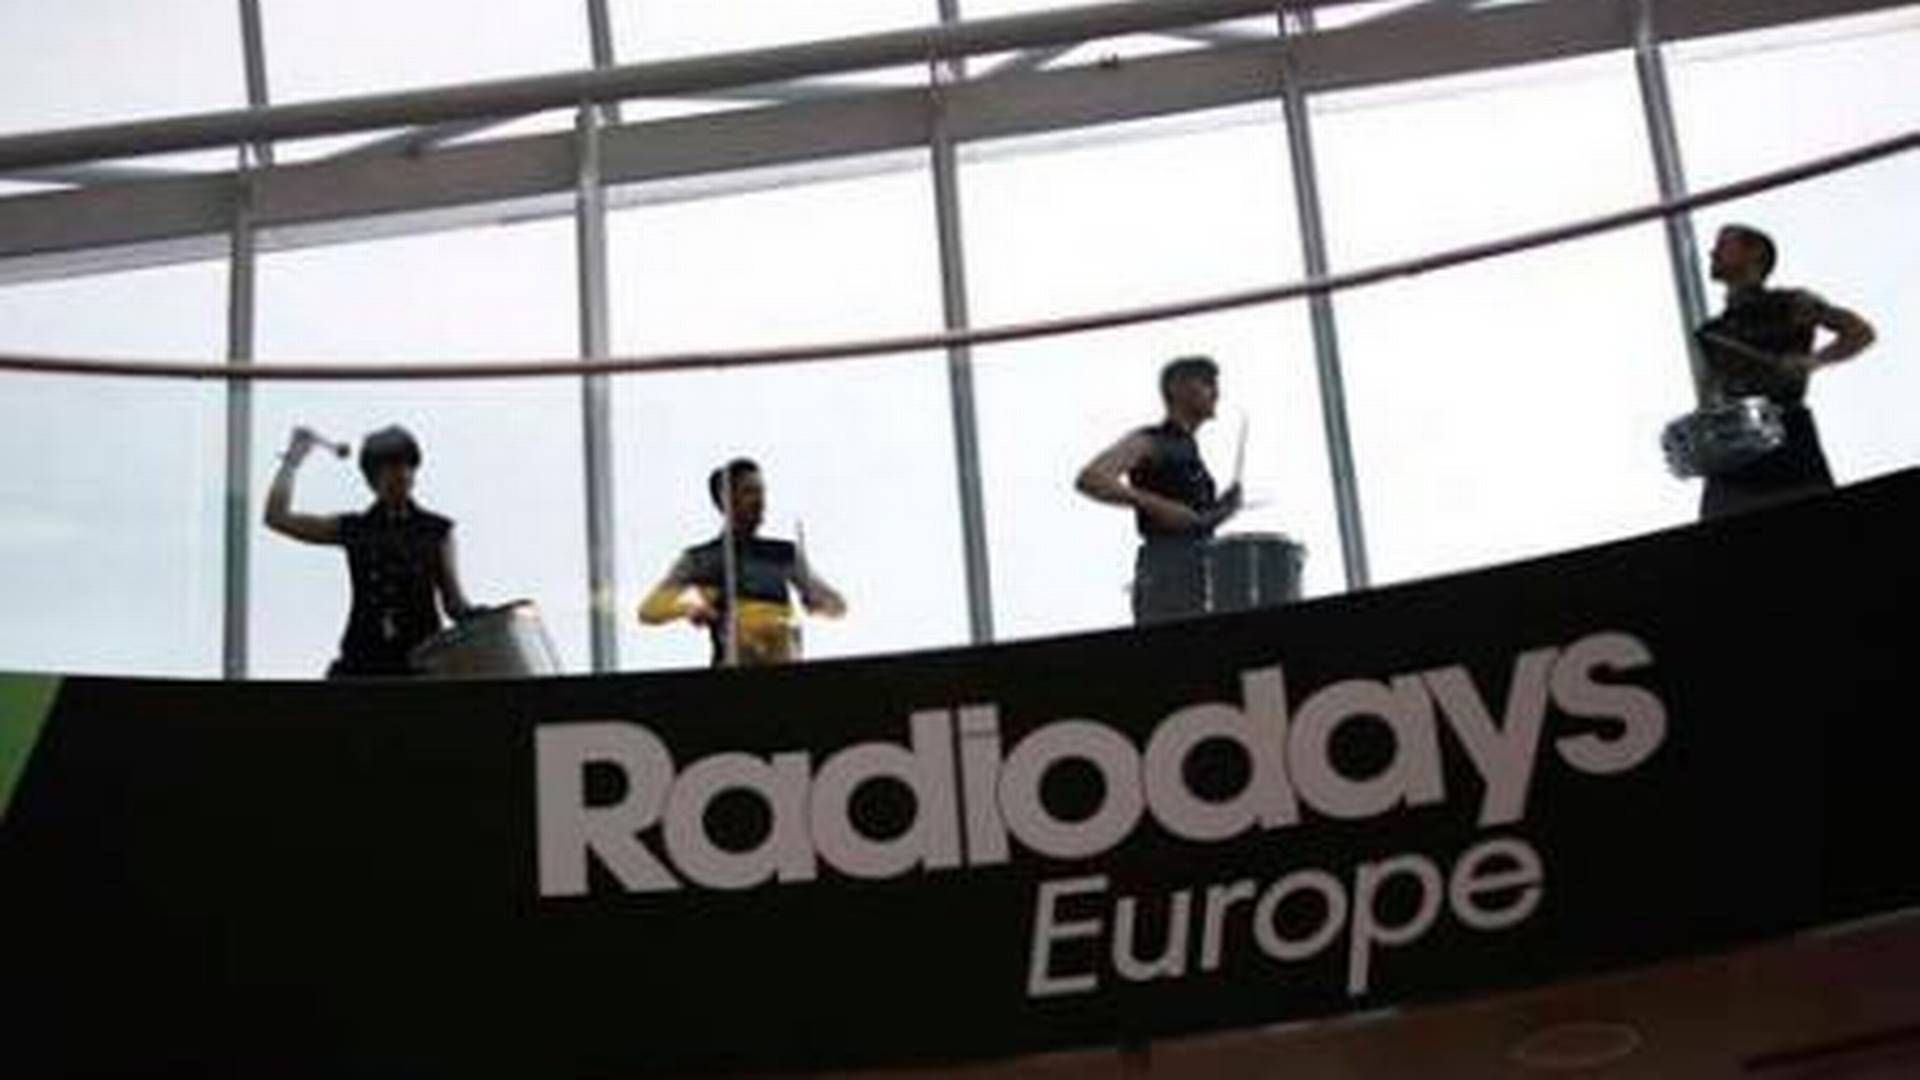 Foto: Radiodays Europe, fra konferencen i 2014